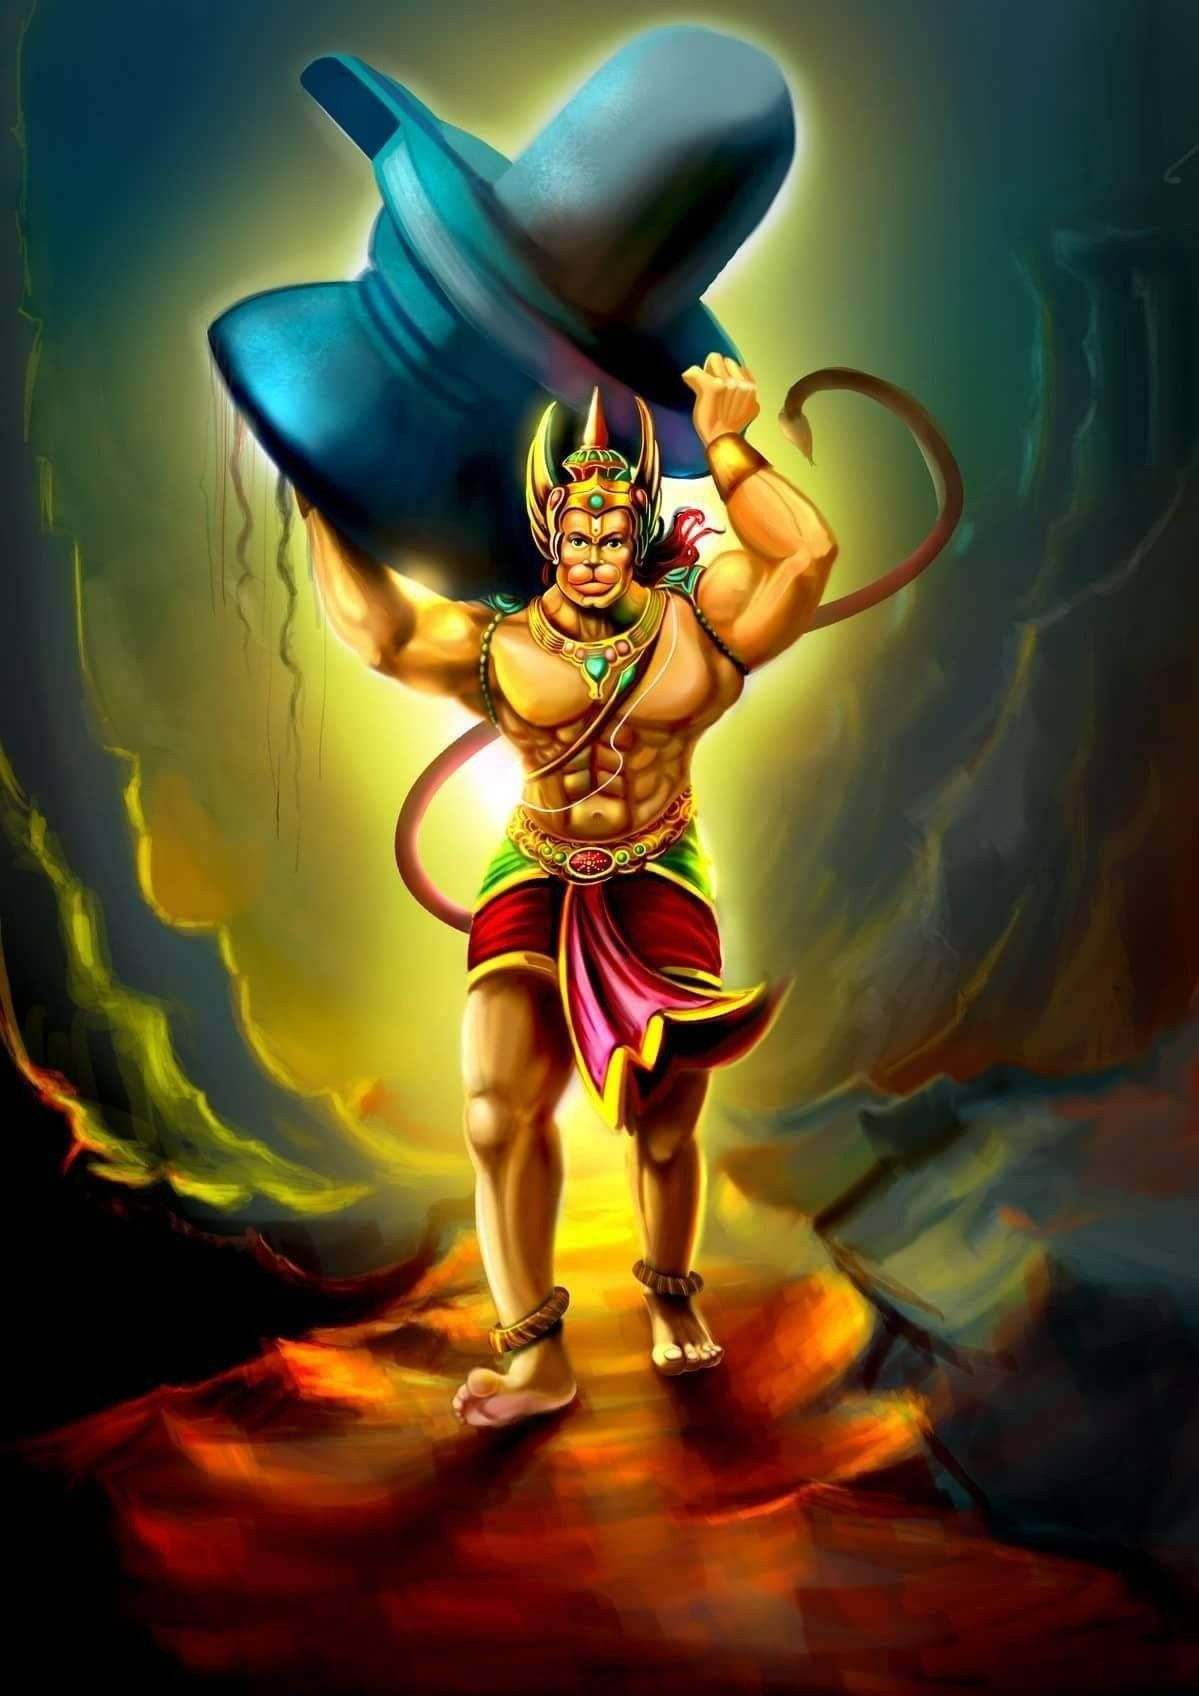 lord hanuman 3d wallpapers for desktop